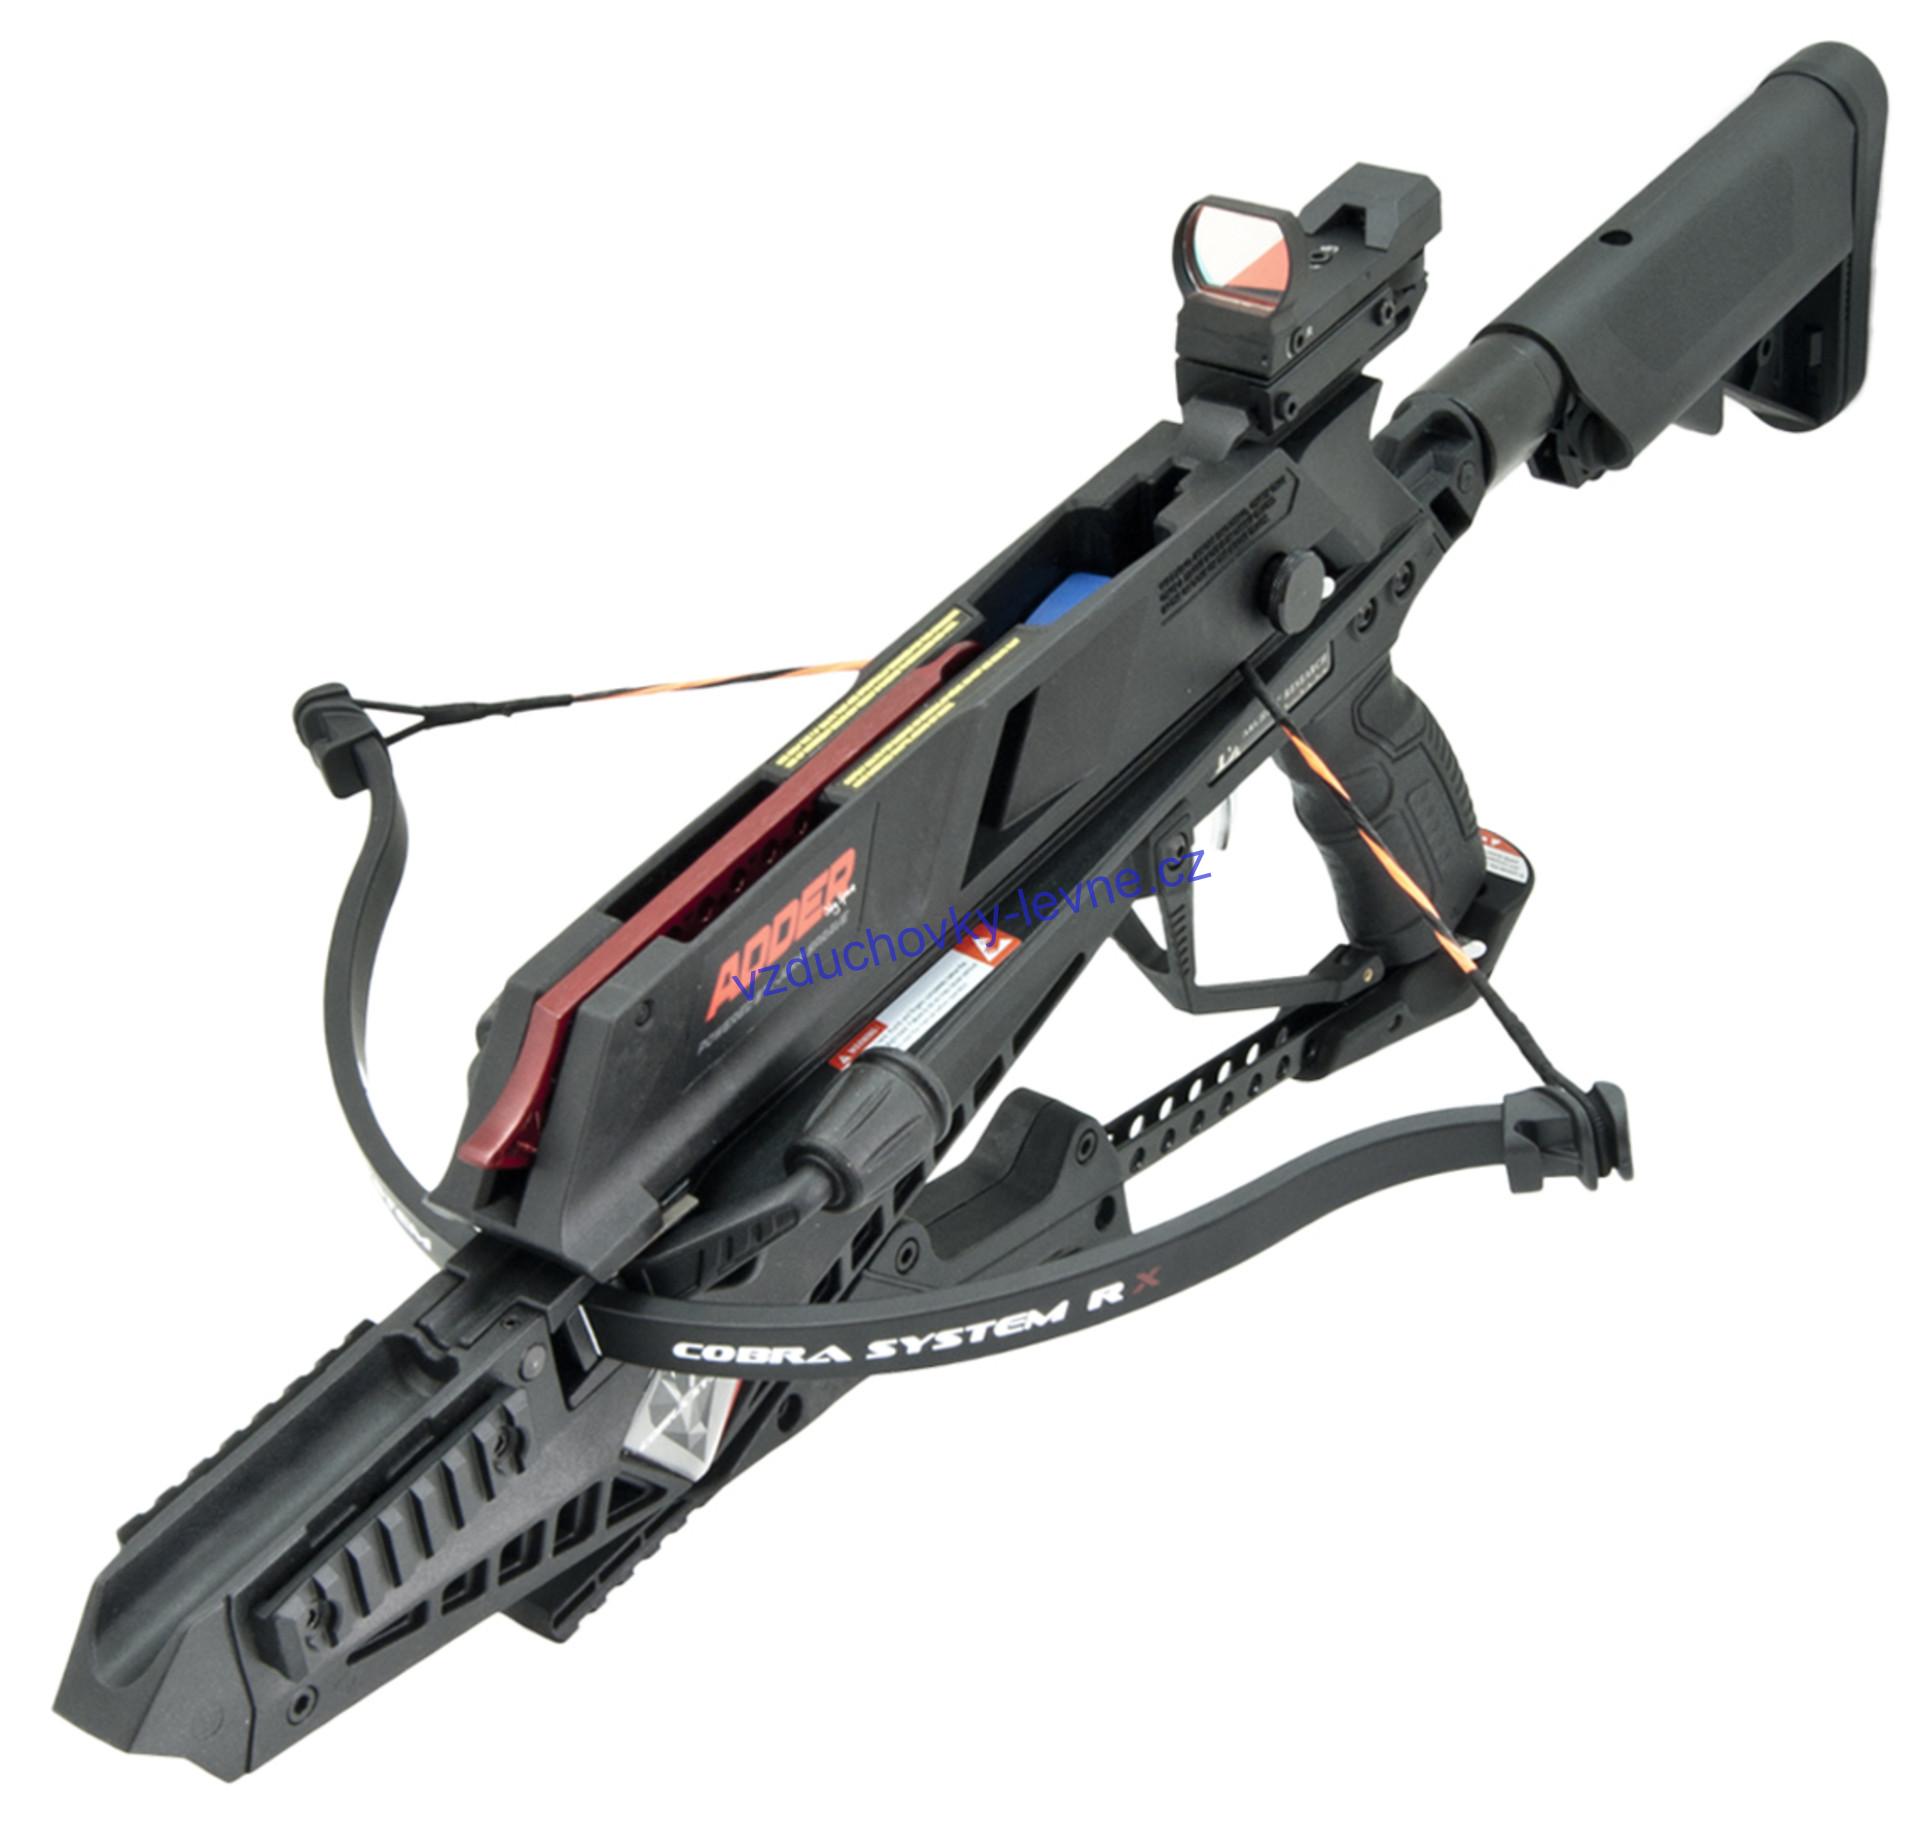 Pistolová kuše Beast Hunter Cobra RX Adder 130lbs black